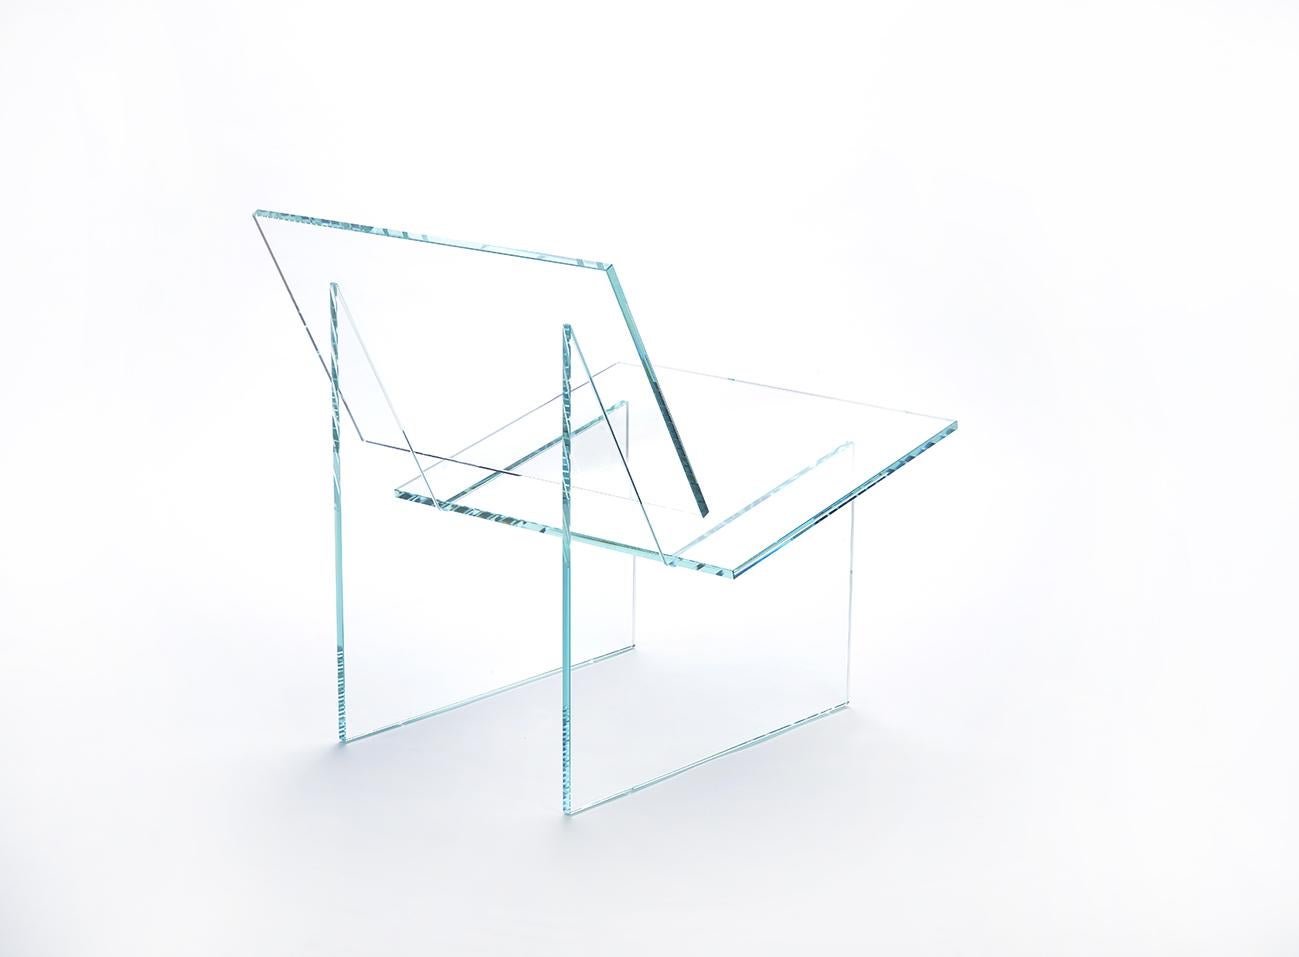 Monolog Unsichtbarer Sessel von Glass Variations
Abmessungen: B 65 x T 55 x H 65 cm
MATERIALIEN: Glas. 

Der Sessel MONOLOG ist ein einzigartiges, fast unsichtbares Designerstück aus der Kollektion Glass Variations, die von Exercice entworfen wurde.